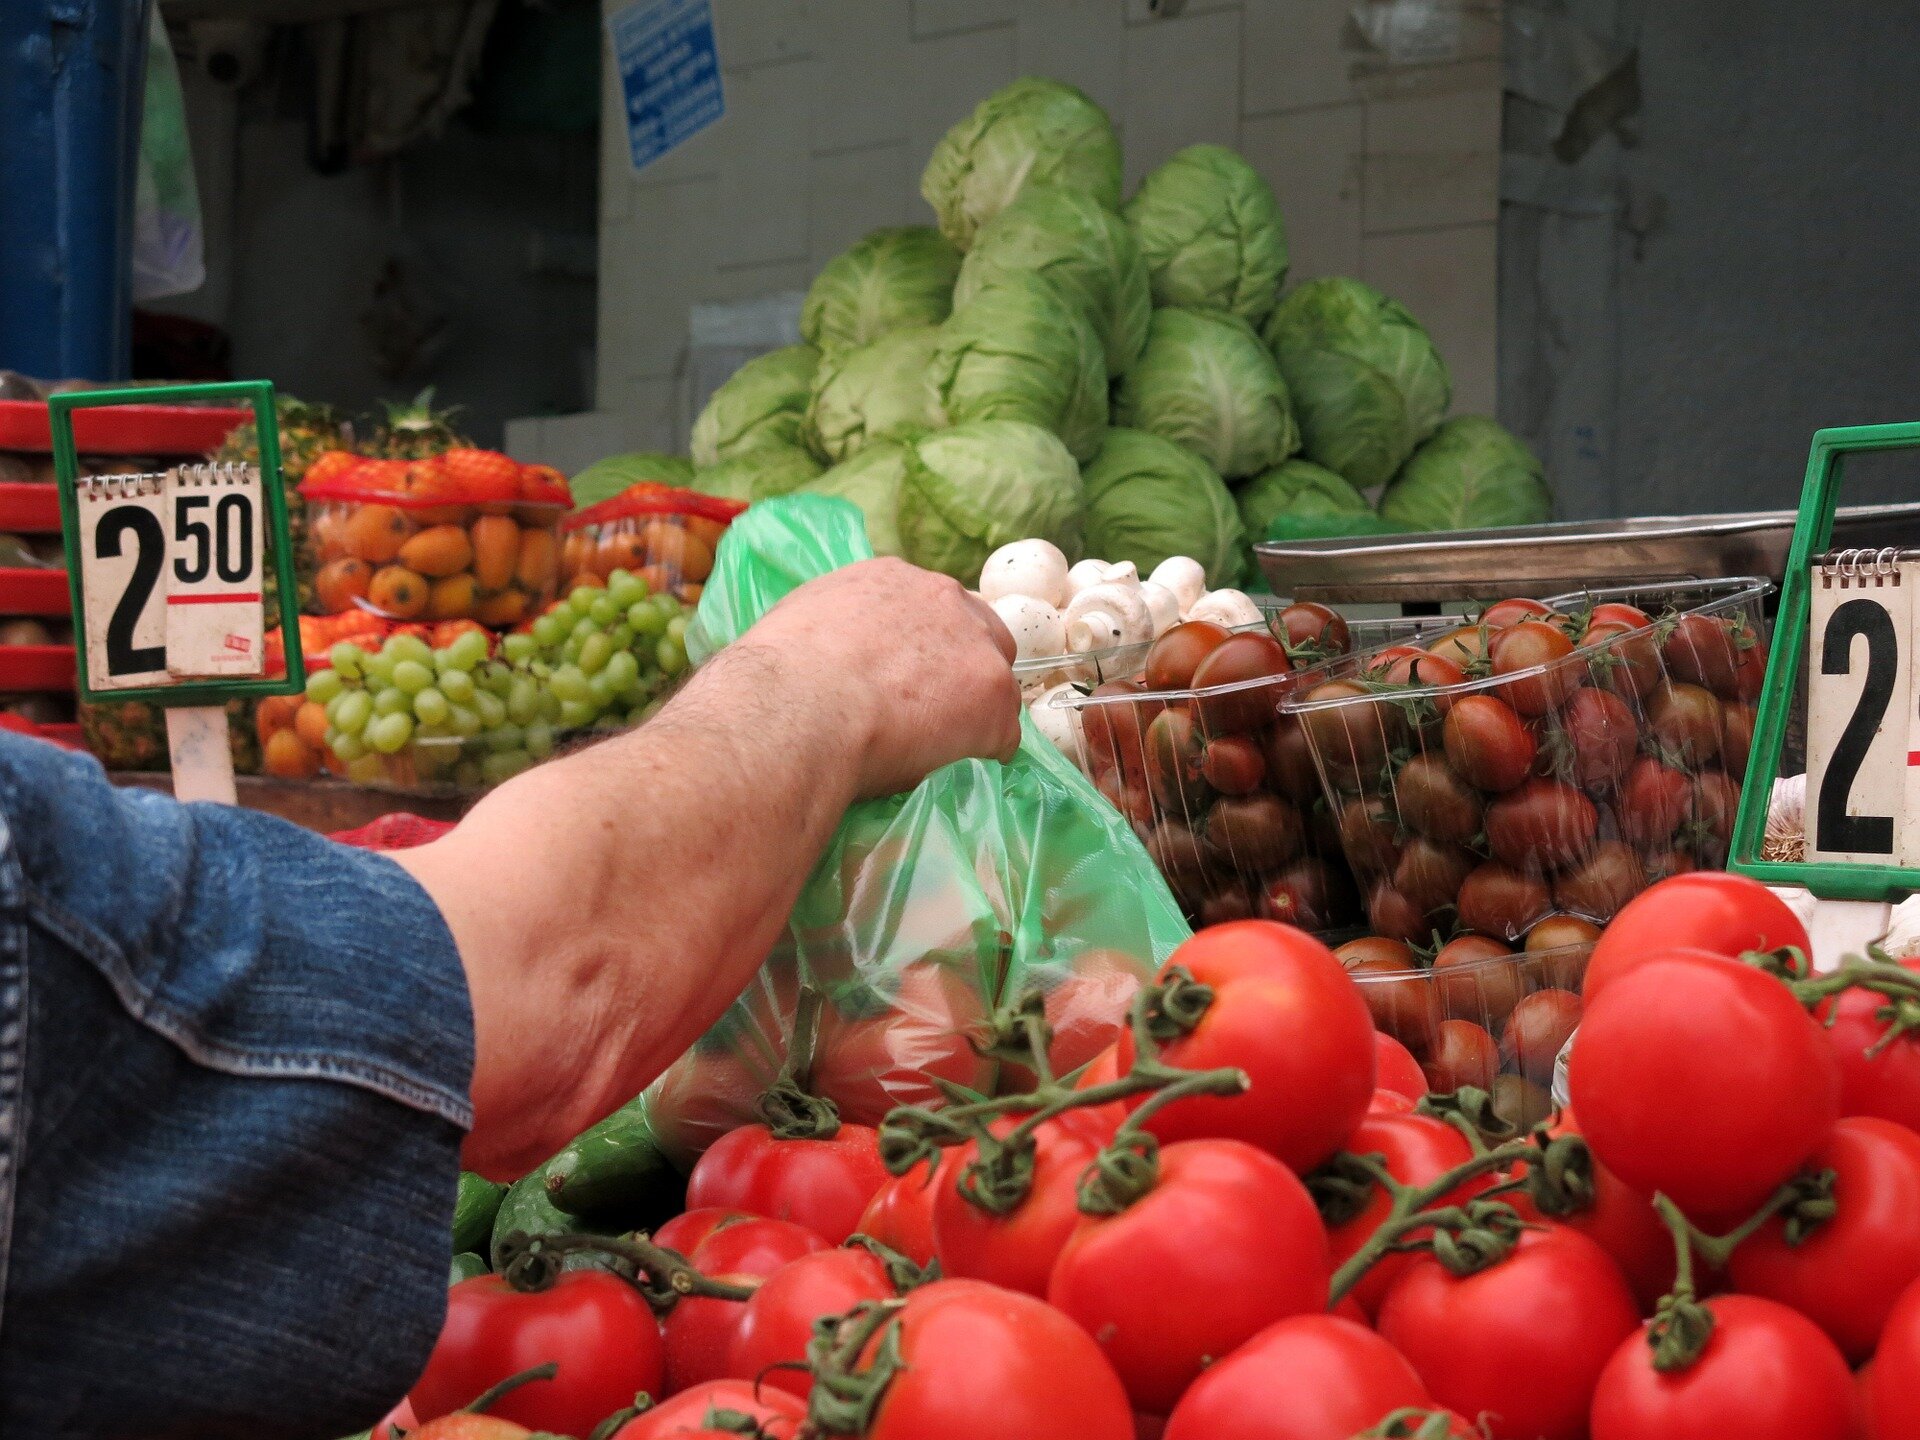 Na zdjęciu znajdują się warzywa i owoce: kapusta, pomidory, pomidorki koktajlowe, winogrona oraz ręka osoby, która trzyma plastikową torebkę.